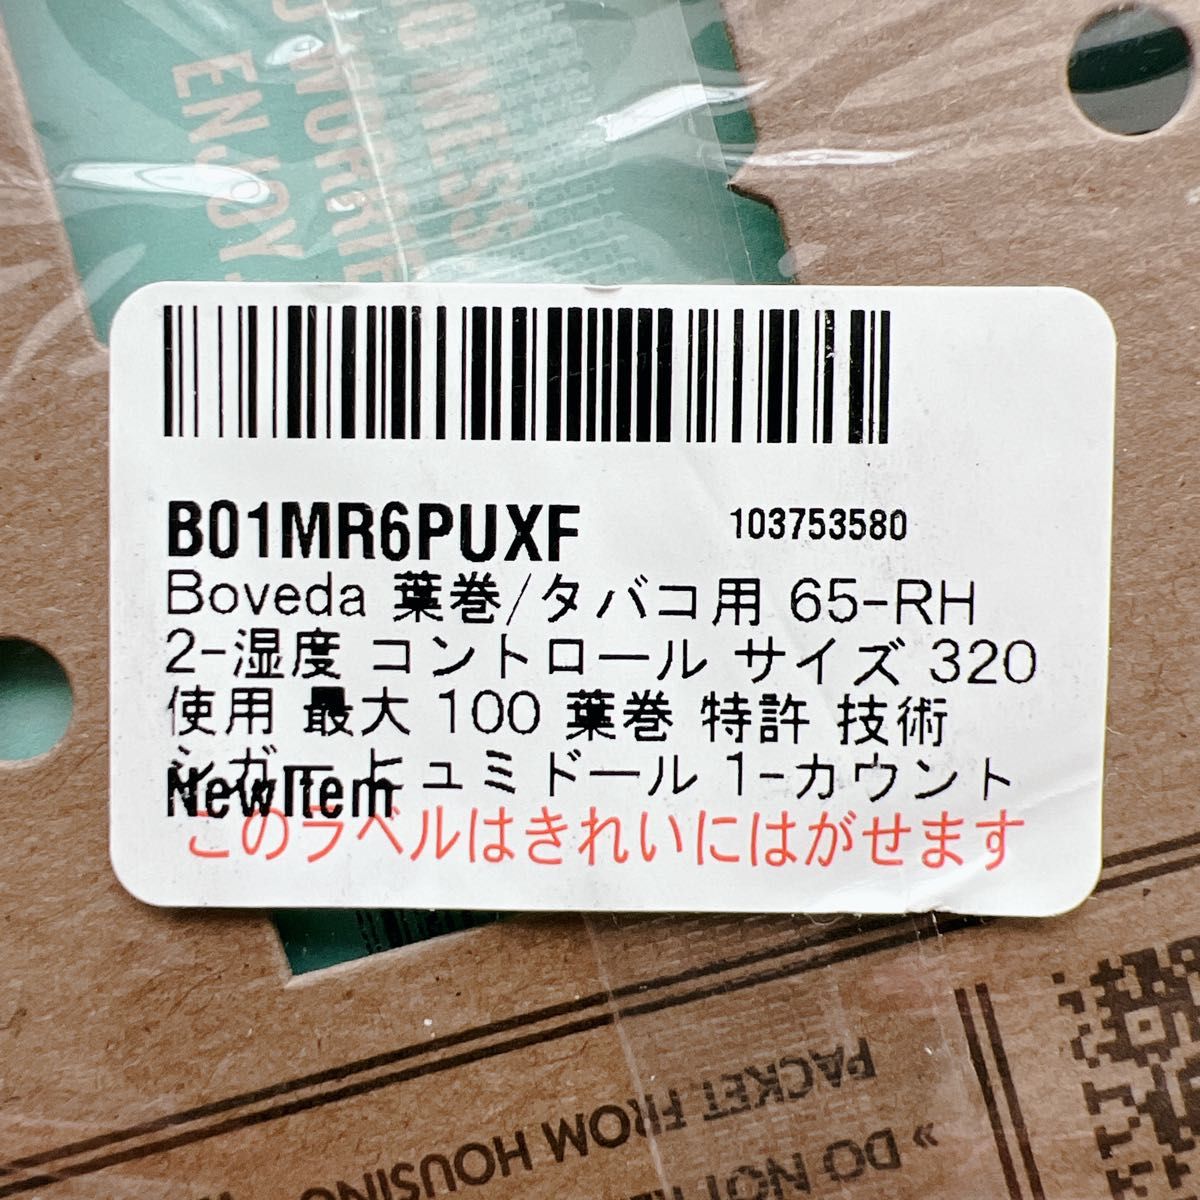 Boveda 葉巻/タバコ用 65-RH 2-湿度 コントロール サイズ 320